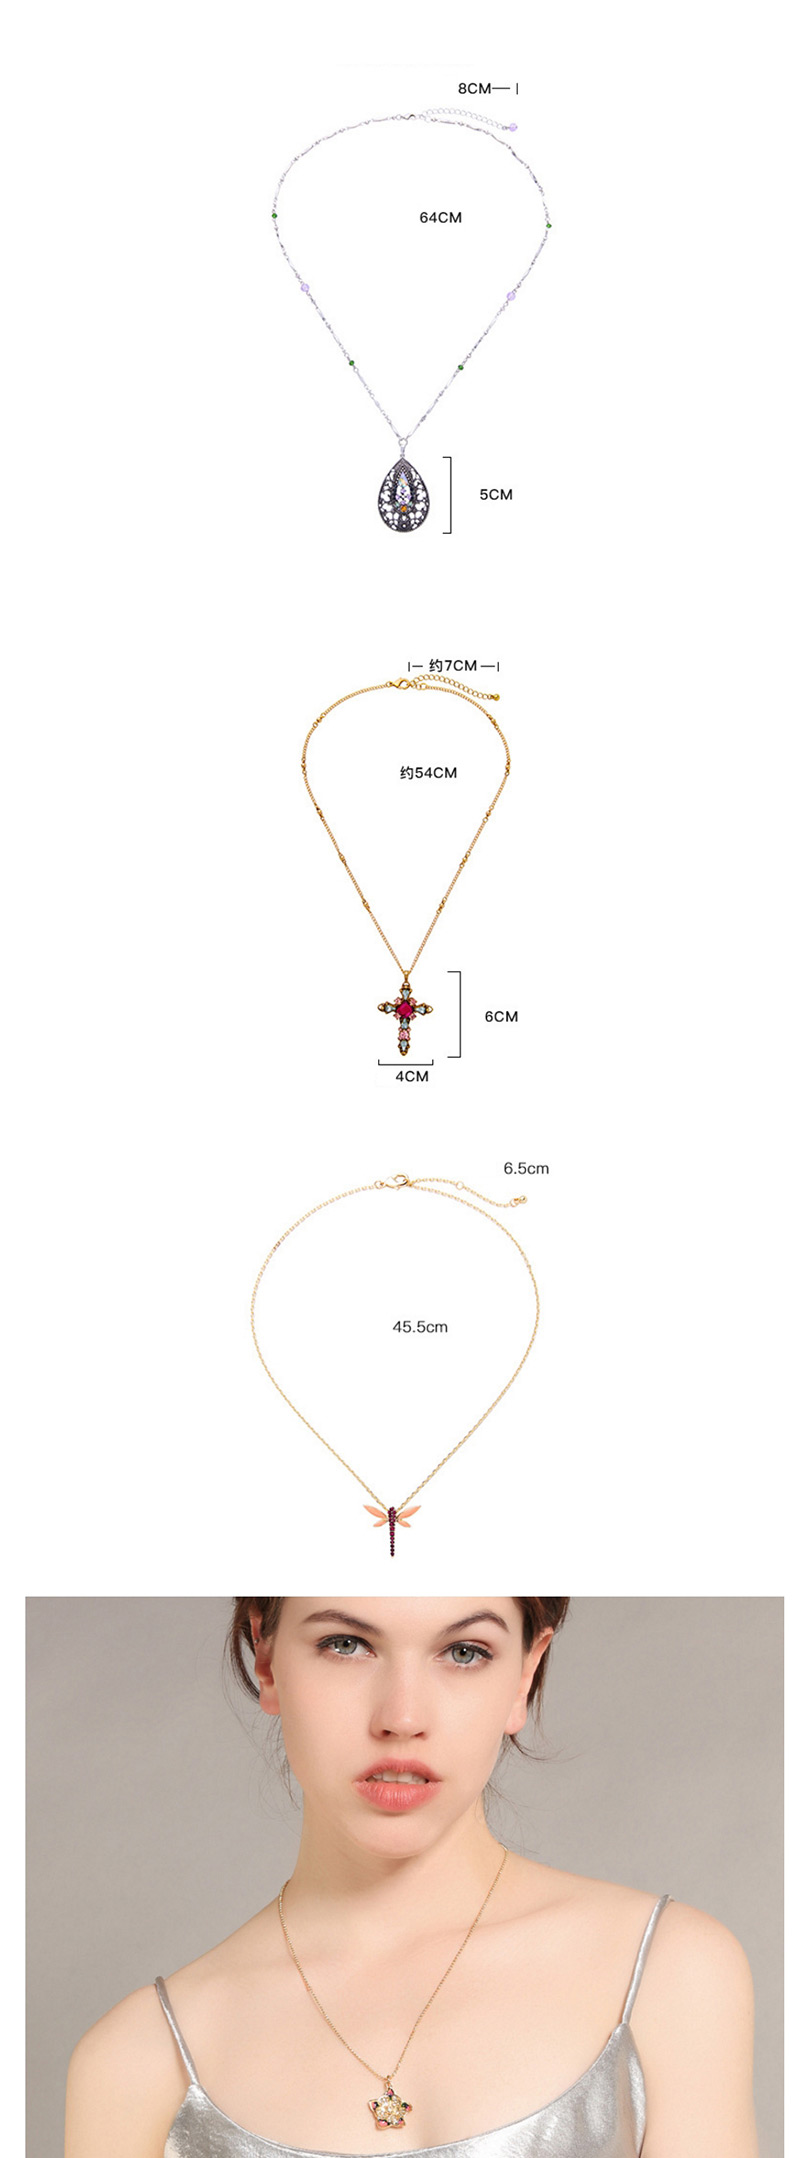 Elegant Gold Color Cross Shape Pendant Decorated Necklace,Pendants